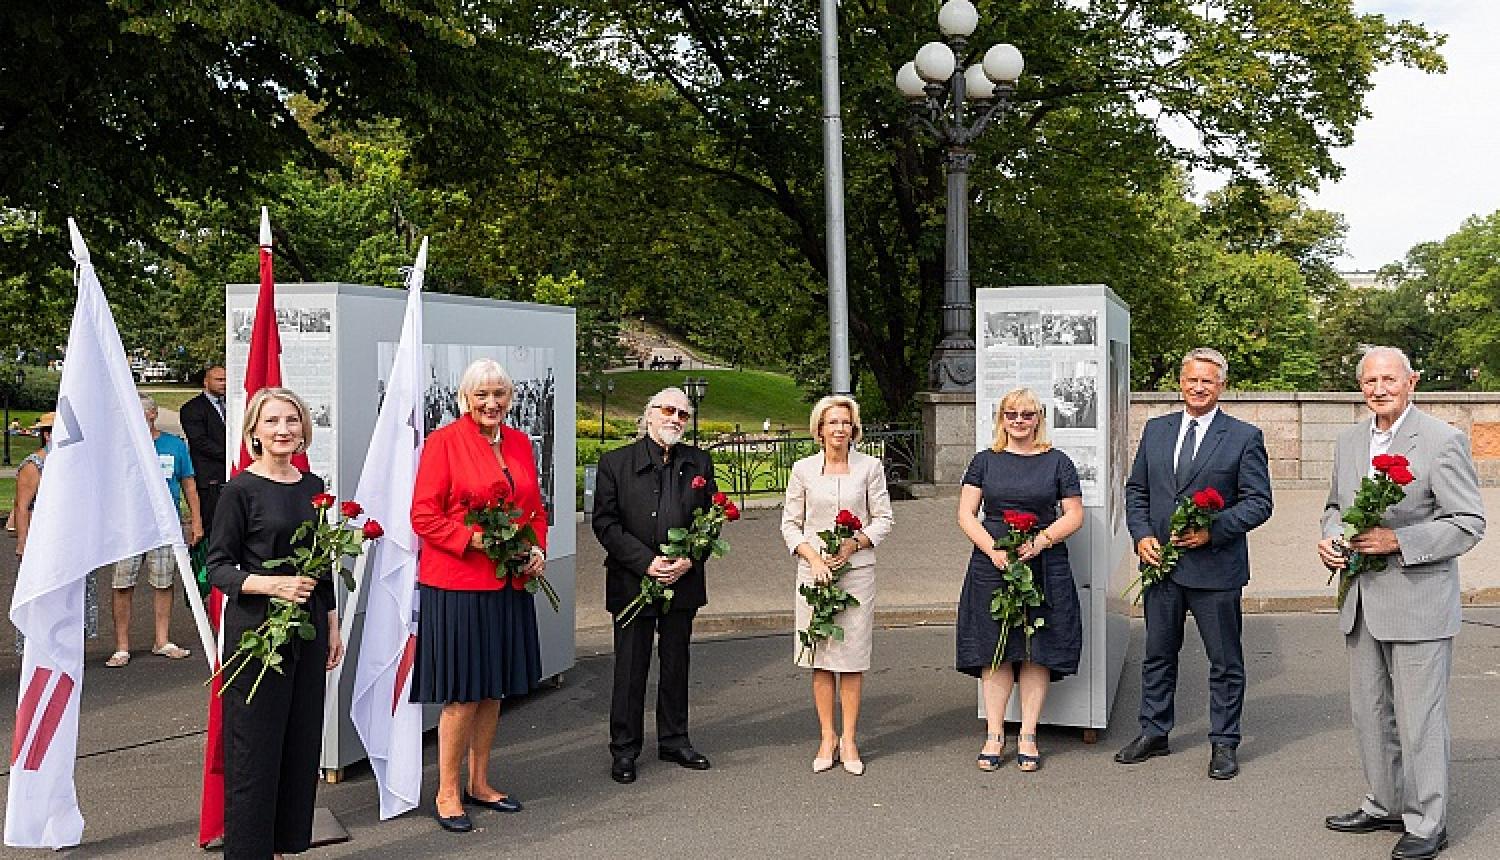 Brīvības laukumā atklāta Latvijas neatkarības atjaunošanas trīsdesmitgadei veltīta lielformāta fotoizstāde